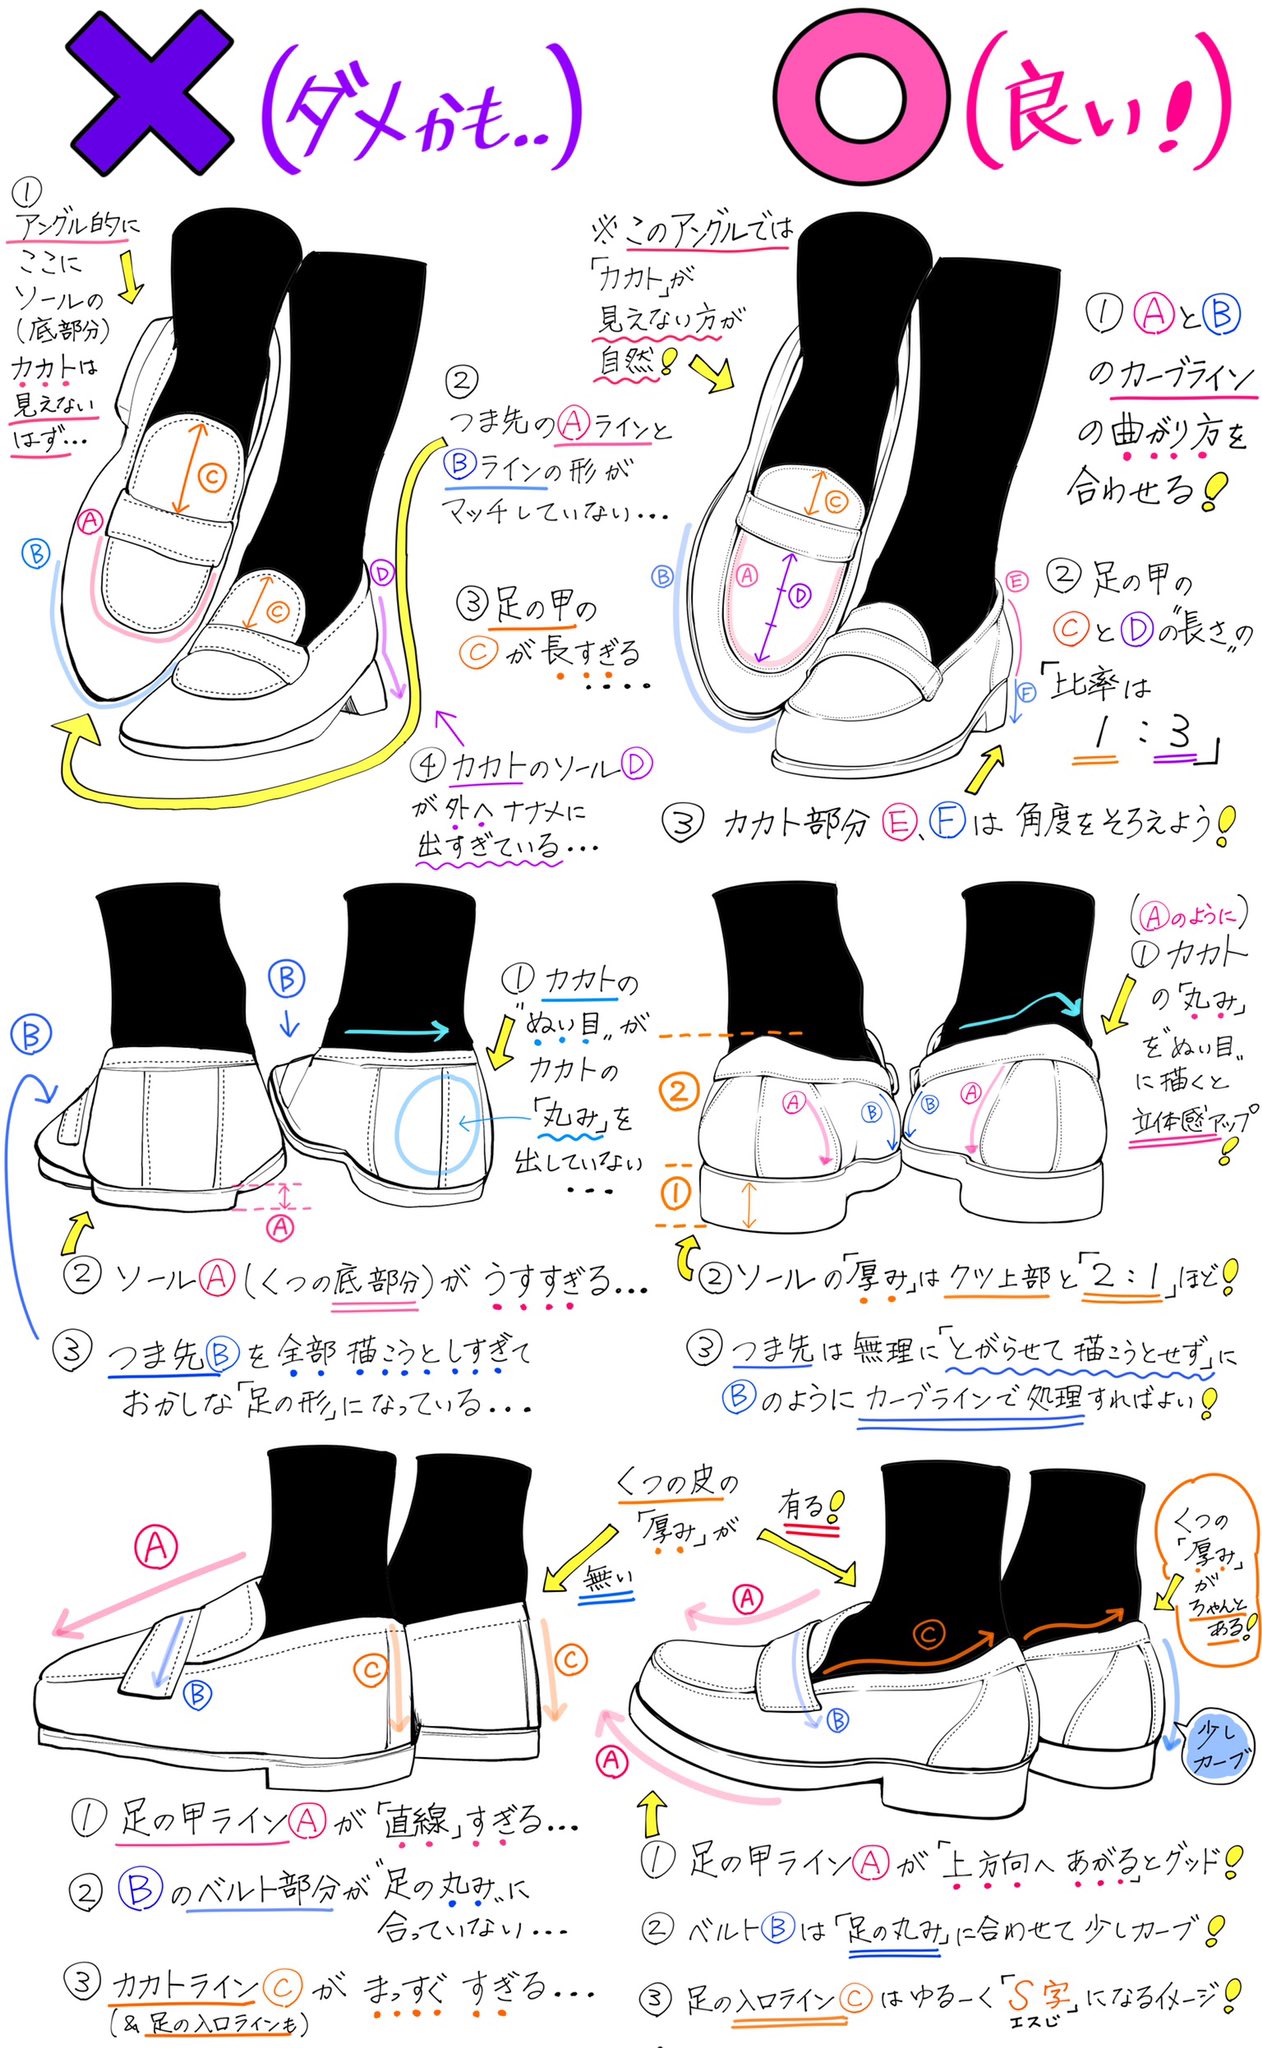 吉村拓也 イラスト講座 ローファー靴の描き方 学生風の靴 を可愛く描くときの ダメなこと と 良いこと T Co 6zwcptb19o Twitter